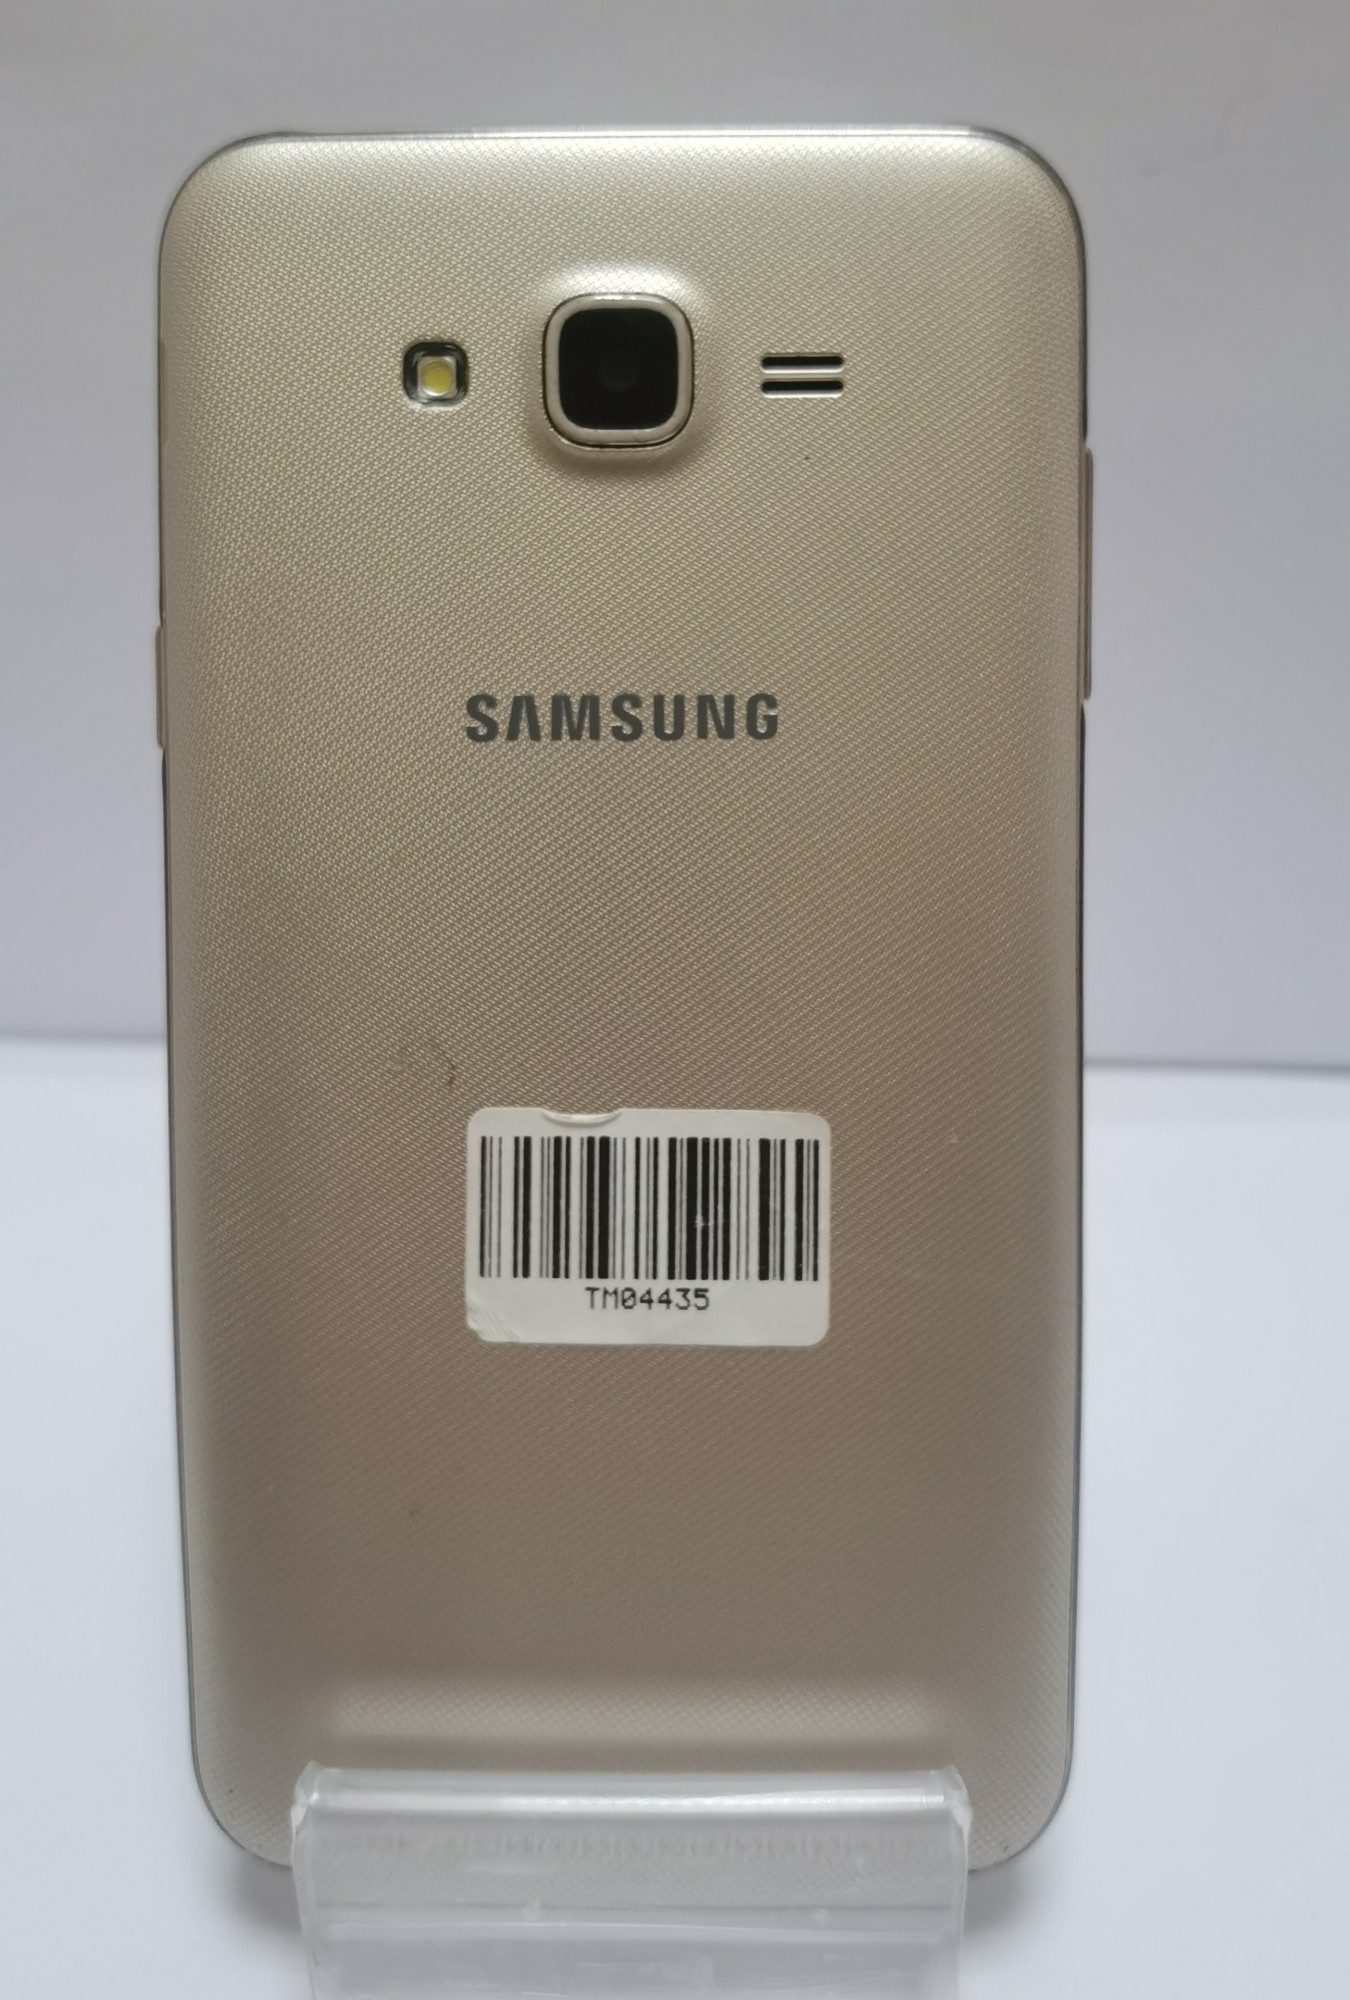 Samsung Galaxy J7 Neo (SM-J701F) 2/16Gb 1